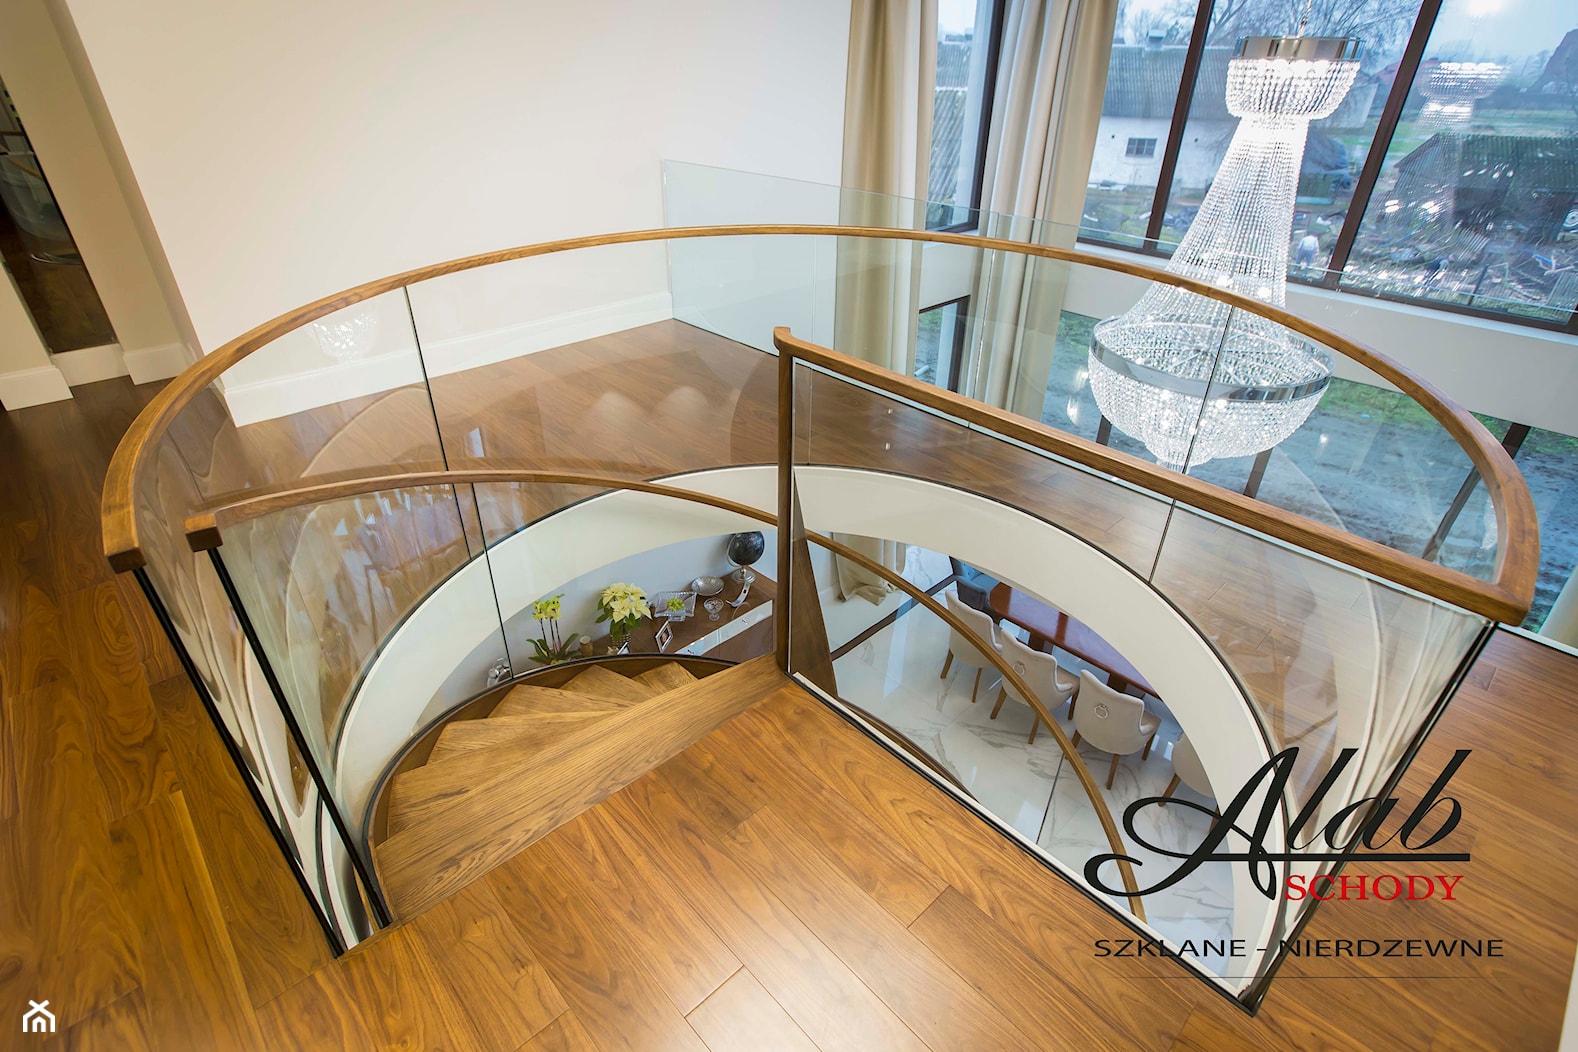 Balustrada szklana z pochwytem drewnianym - zdjęcie od alab balustrady - Homebook